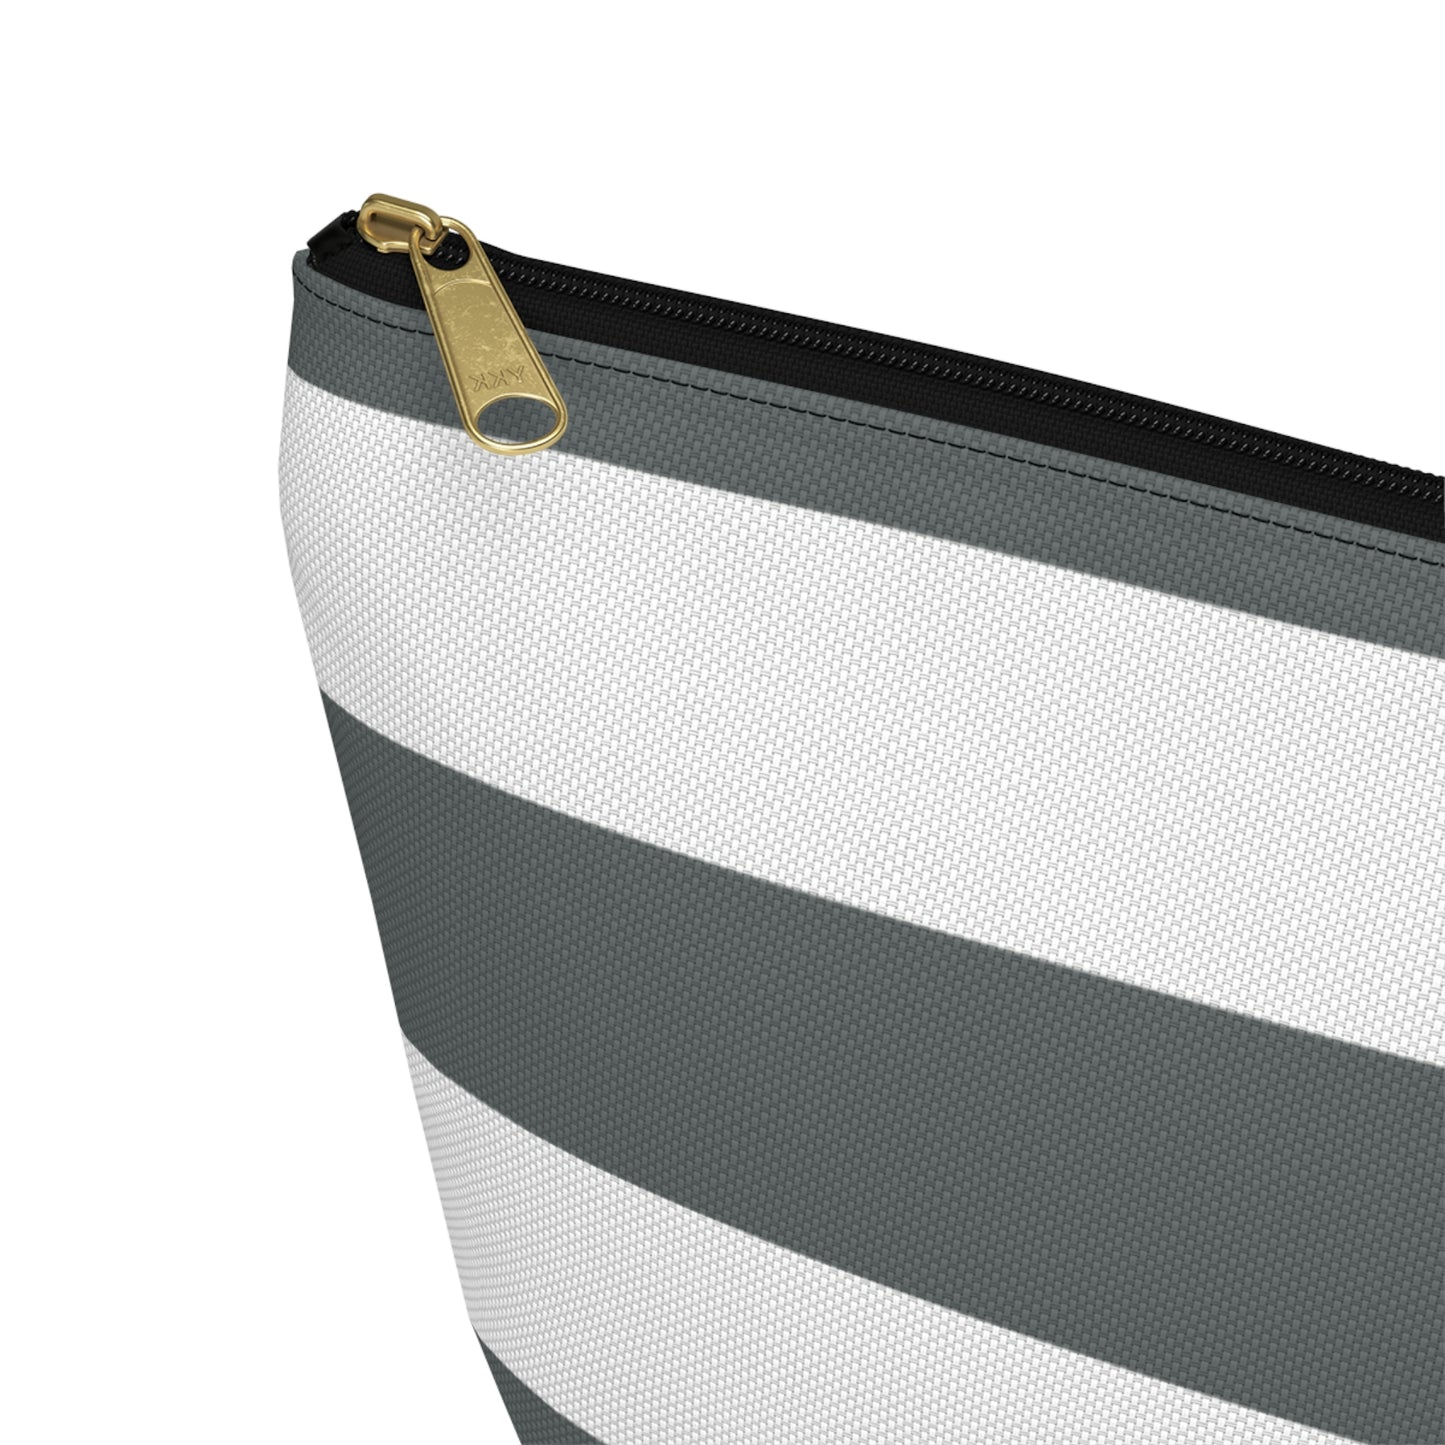 Big Bottom Zipper Pouch - Charcoal Gray/White Stripes